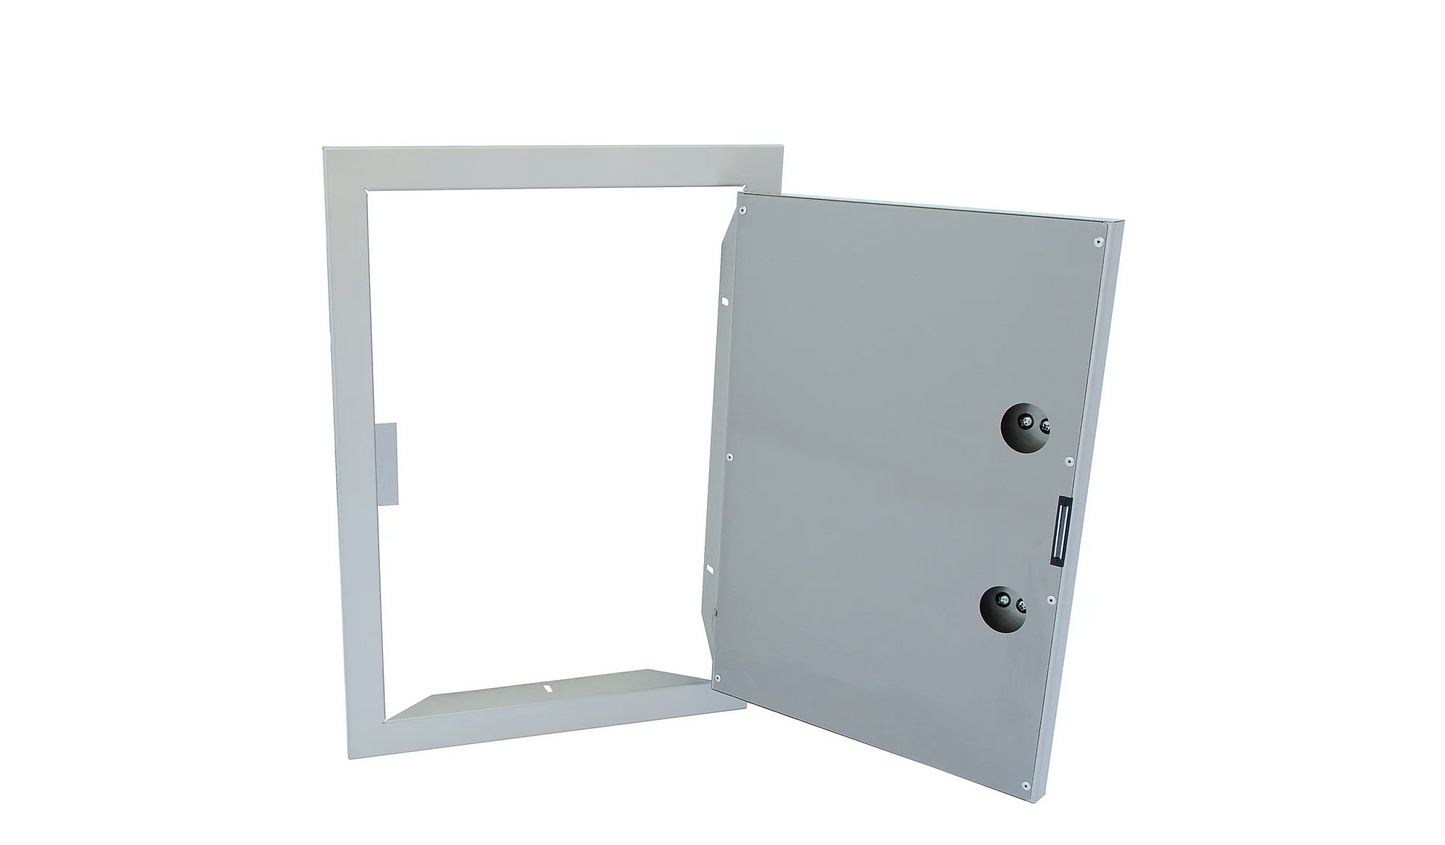 14x20 Kokomo Reversible Stainless Steel Access Door (Vertical)